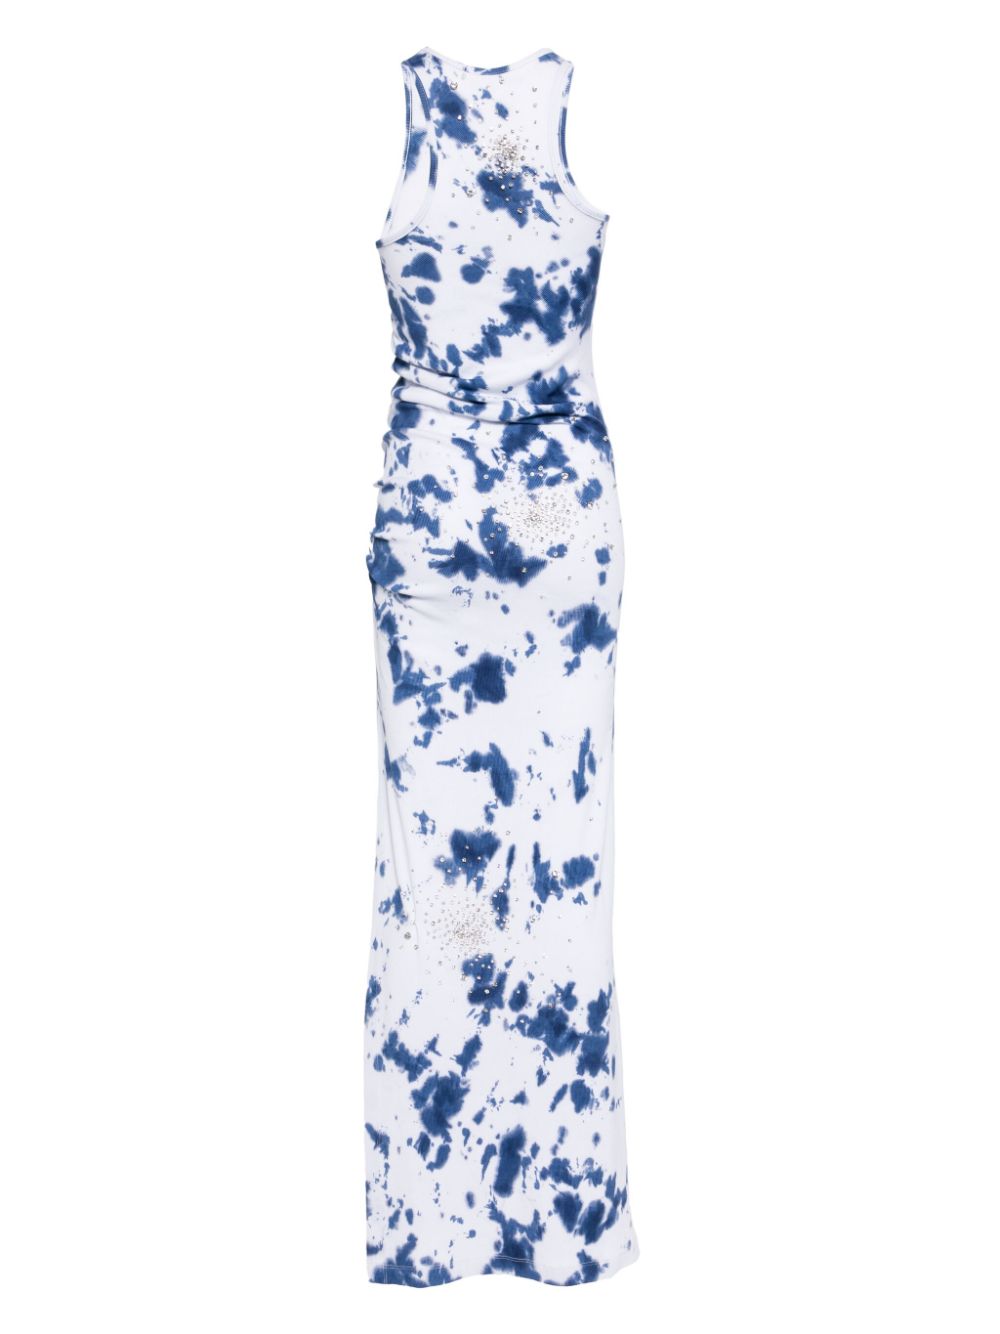 DES PHEMMES crystal-embellished tie-dye dress - Blauw